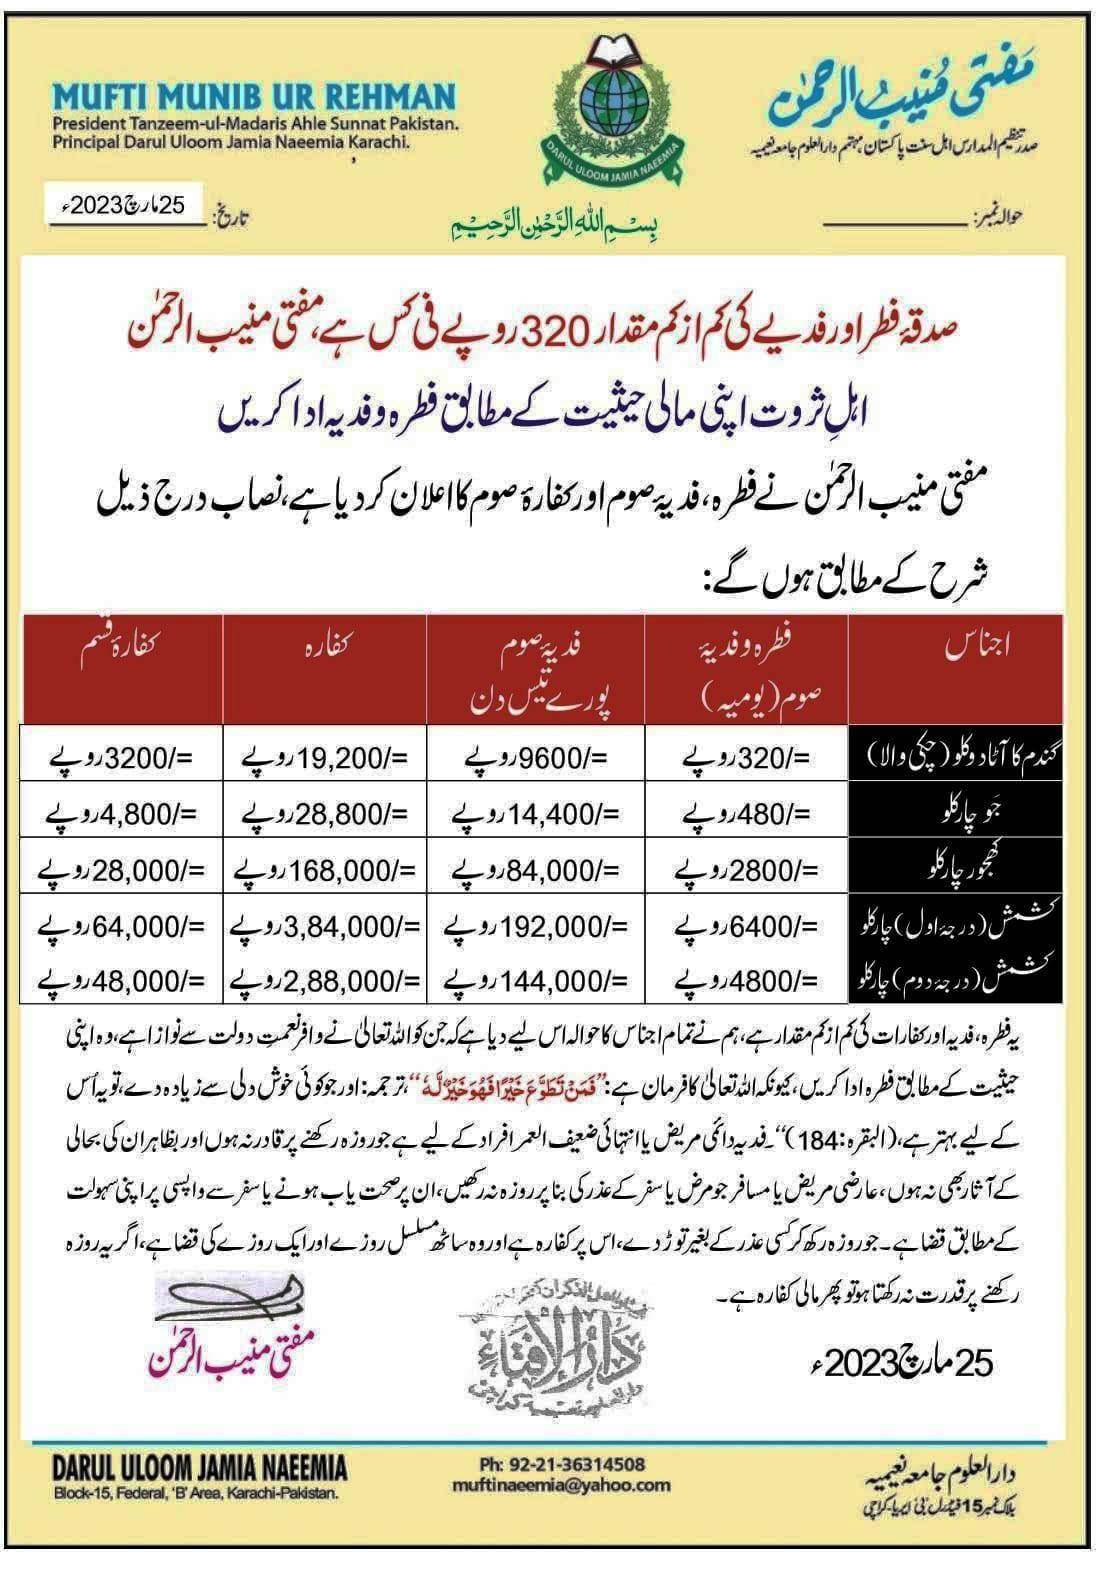 Fitrana Fixed Amount in Pakistan 2023 Mufti Munib ur Rehman